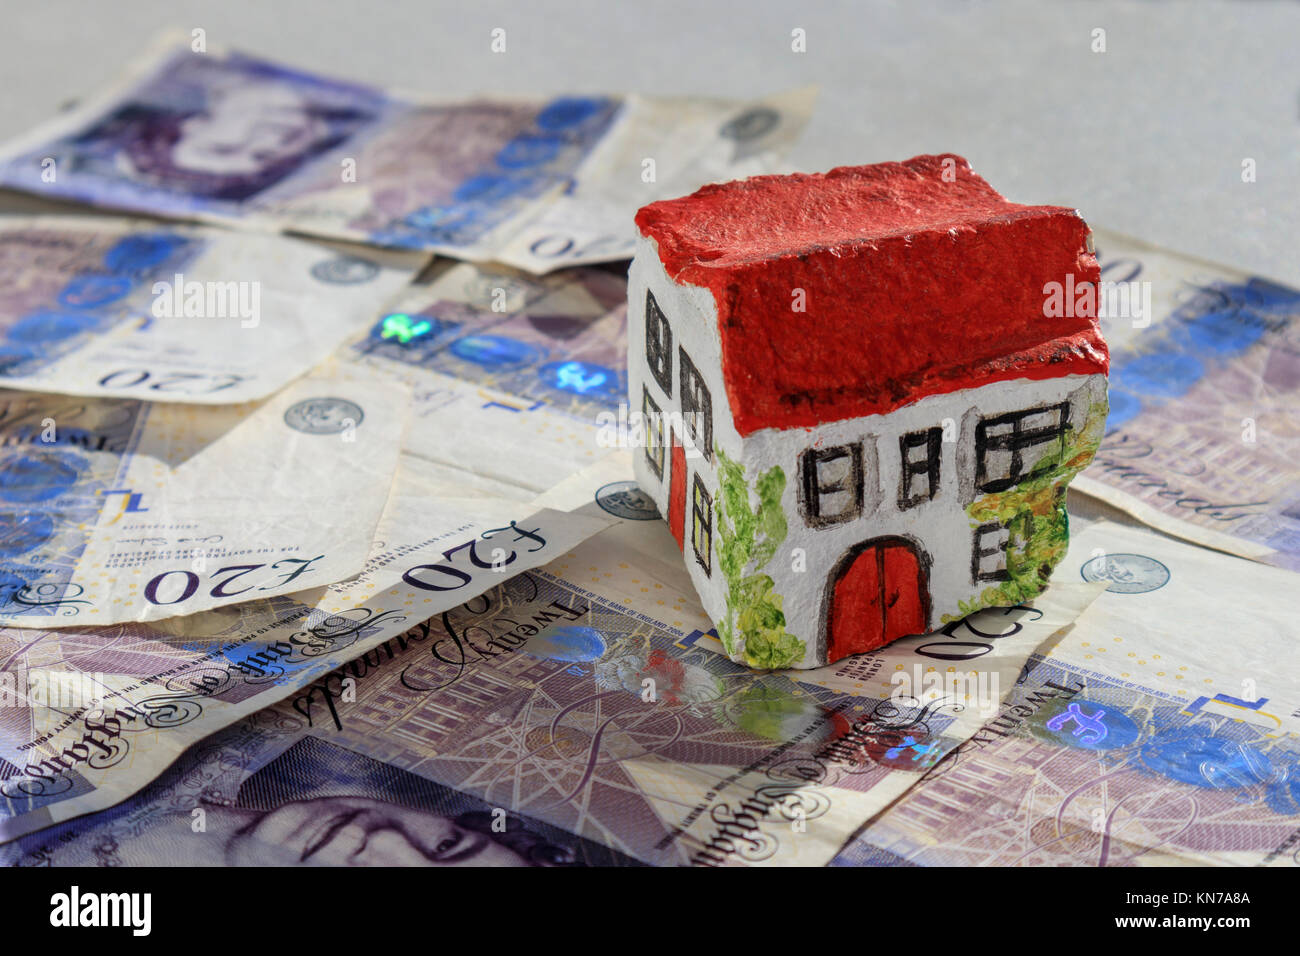 Casa de piedra pintada a mano sentado en 20 libras notas moneda británico sugiriendo el ahorro en el impuesto de timbre Foto de stock